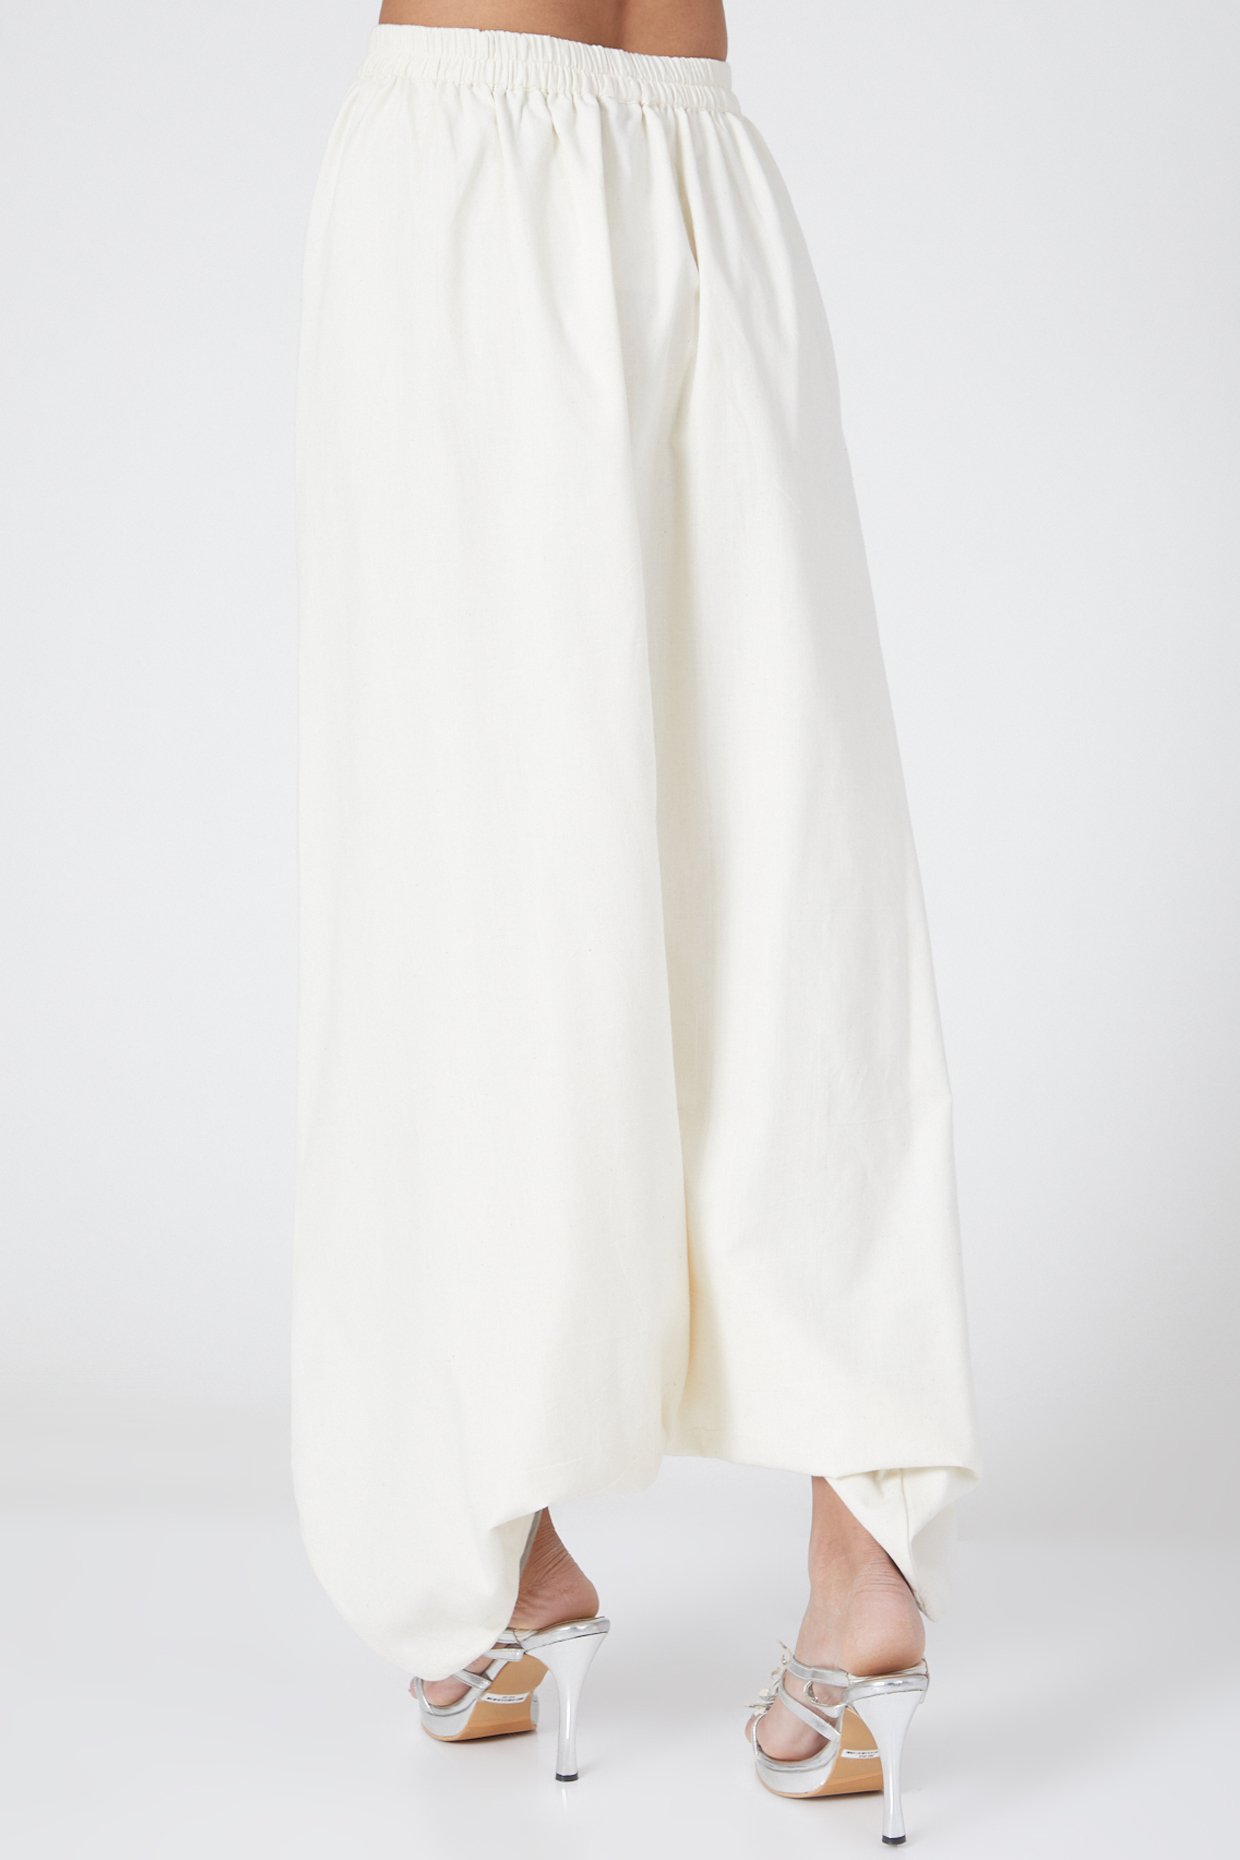 White Chendamangalam Straight Pant - Byhand I Indian Ethnic Wear Online I  Sustainable Fashion I Handmade Clothes